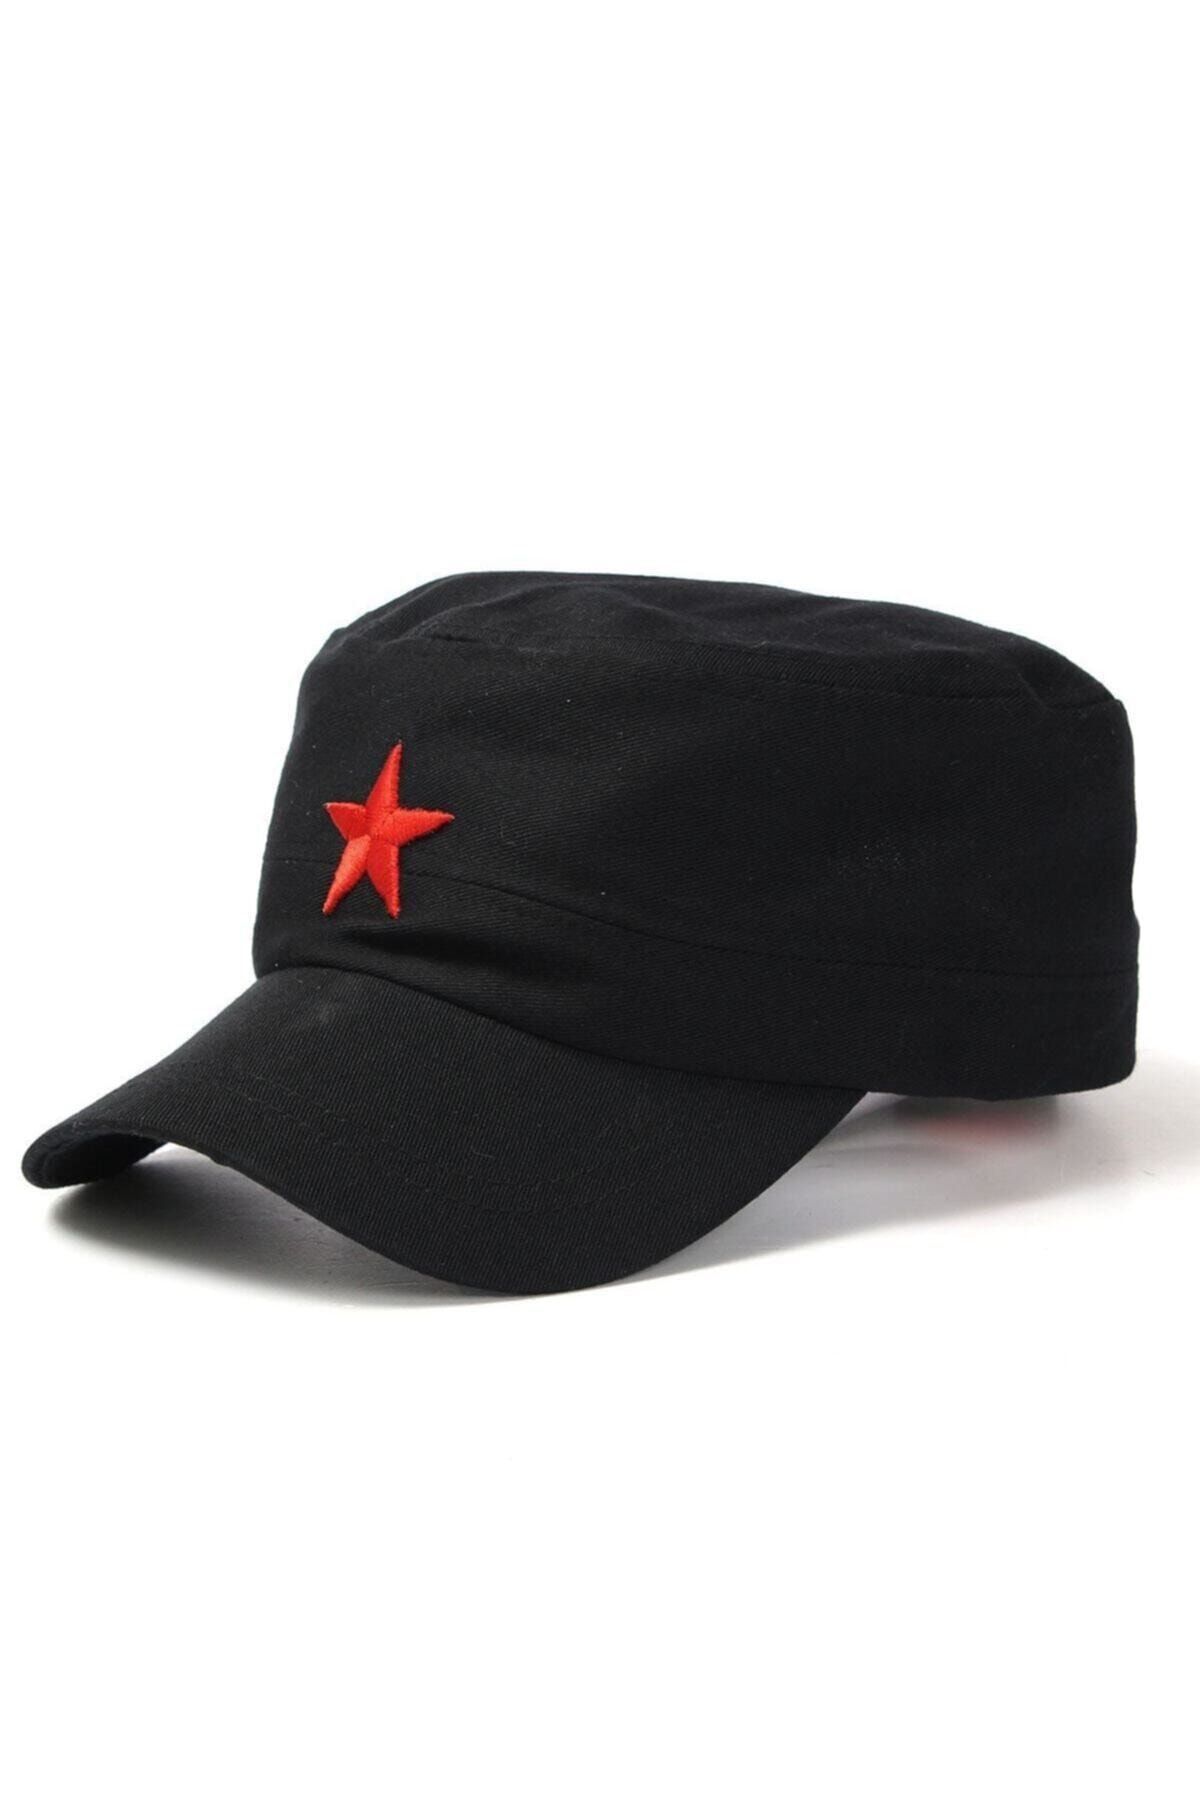 Köstebek Yıldızlı Fidel Castro Che Guevara Şapkası Siyah Renk